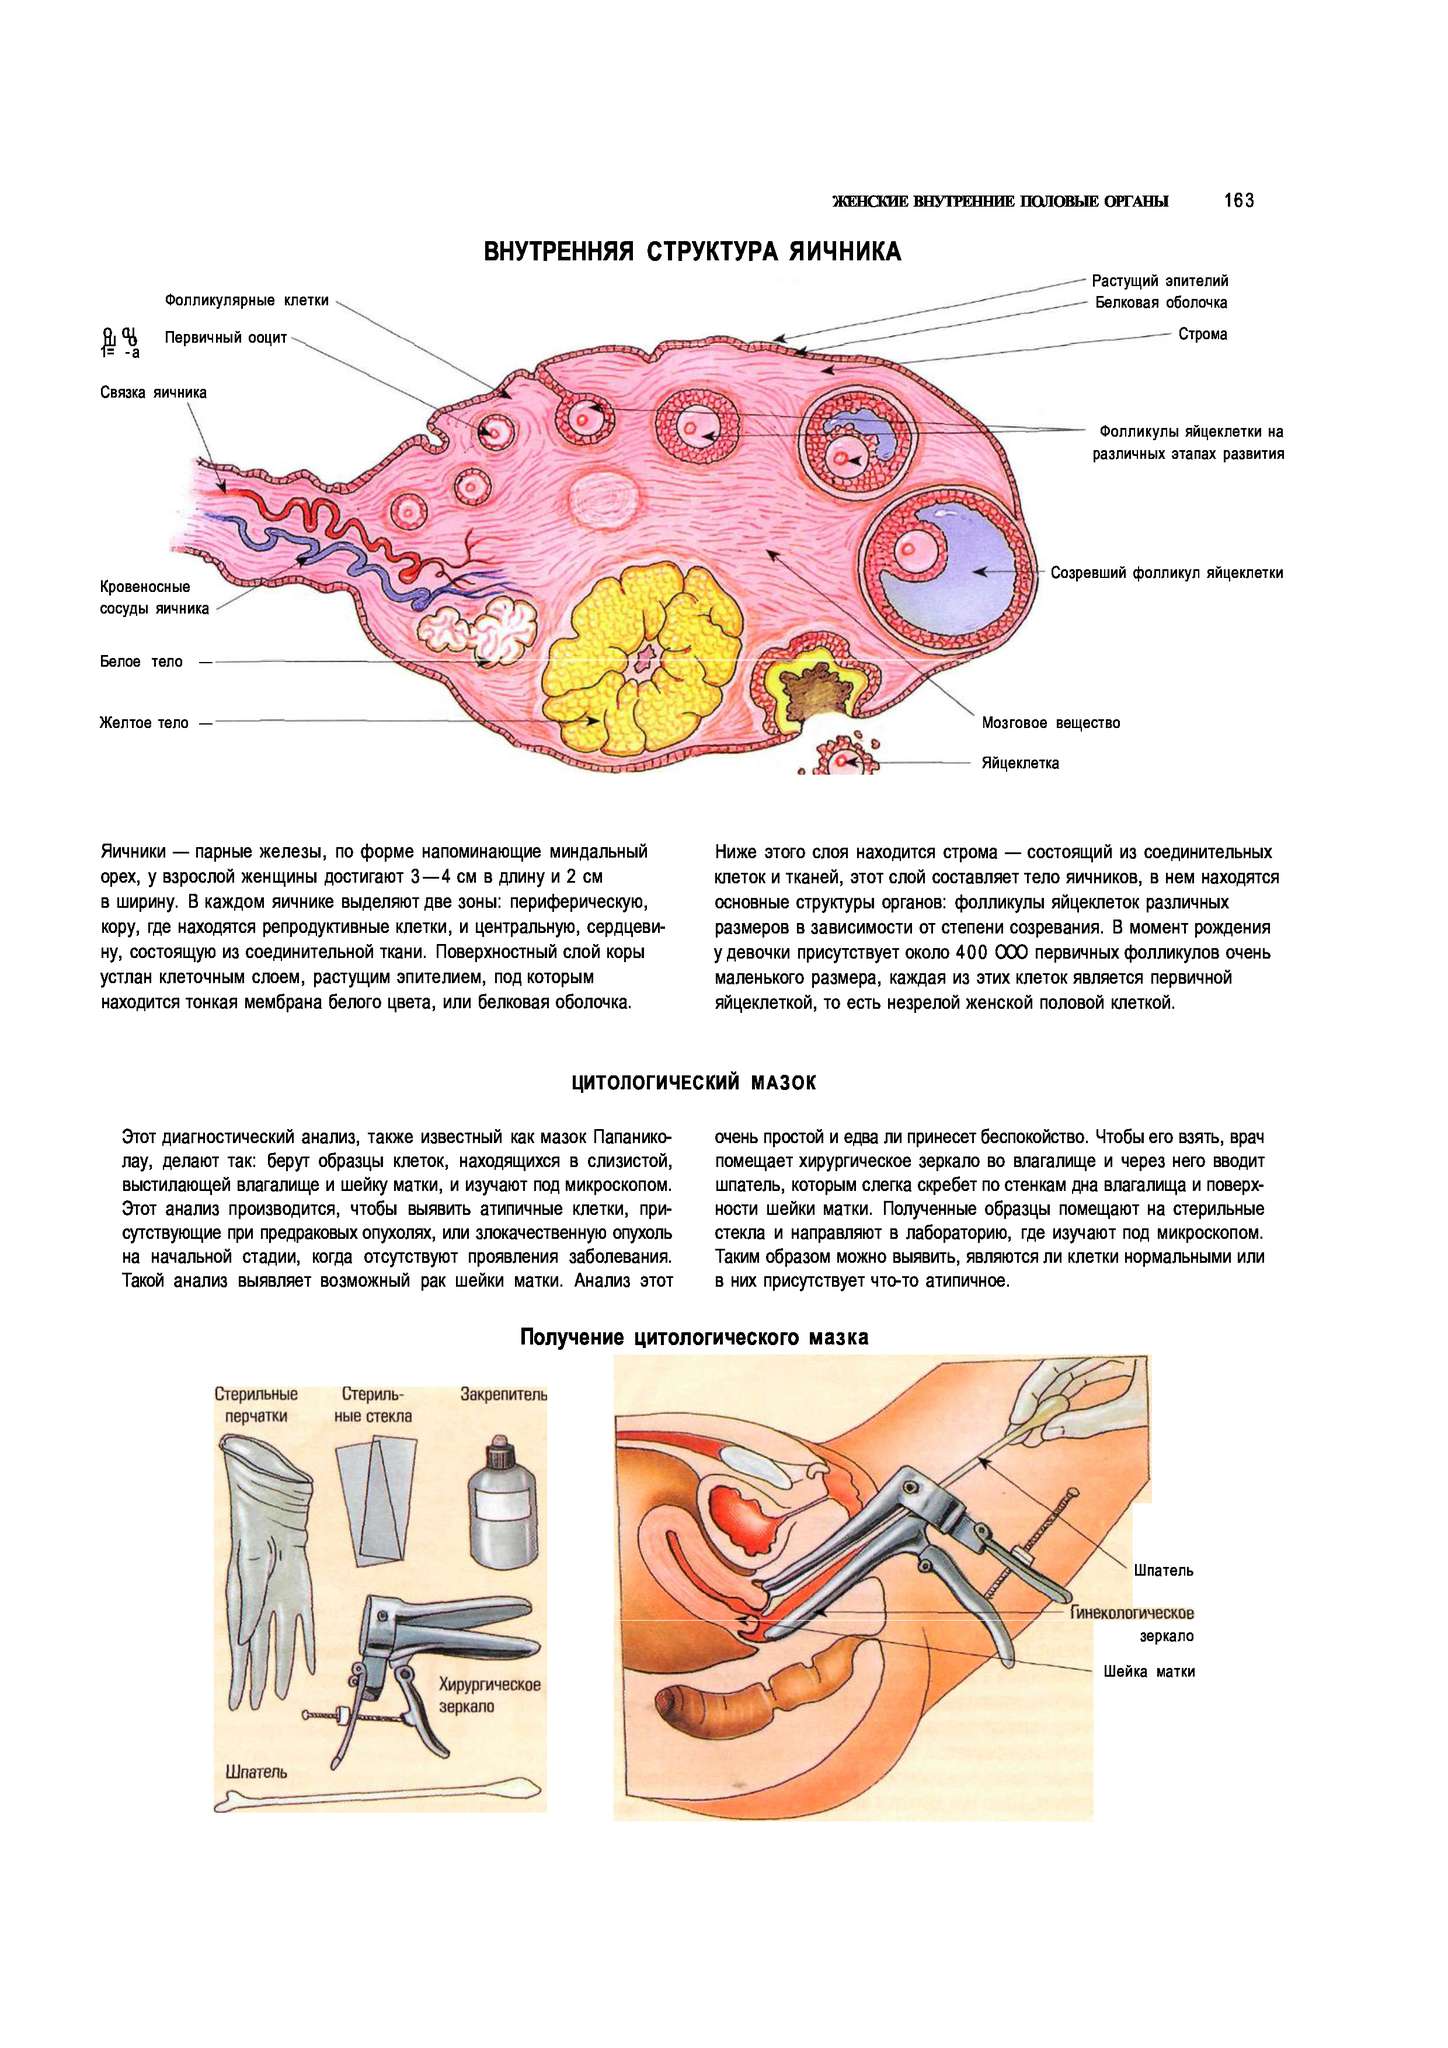 Женские половые органы животных. Яичники расположение строение функции. Женская половая система яичник анатомия строение. Внутреннее строение яичника анатомия. Женские половые органы анатомия яичник.